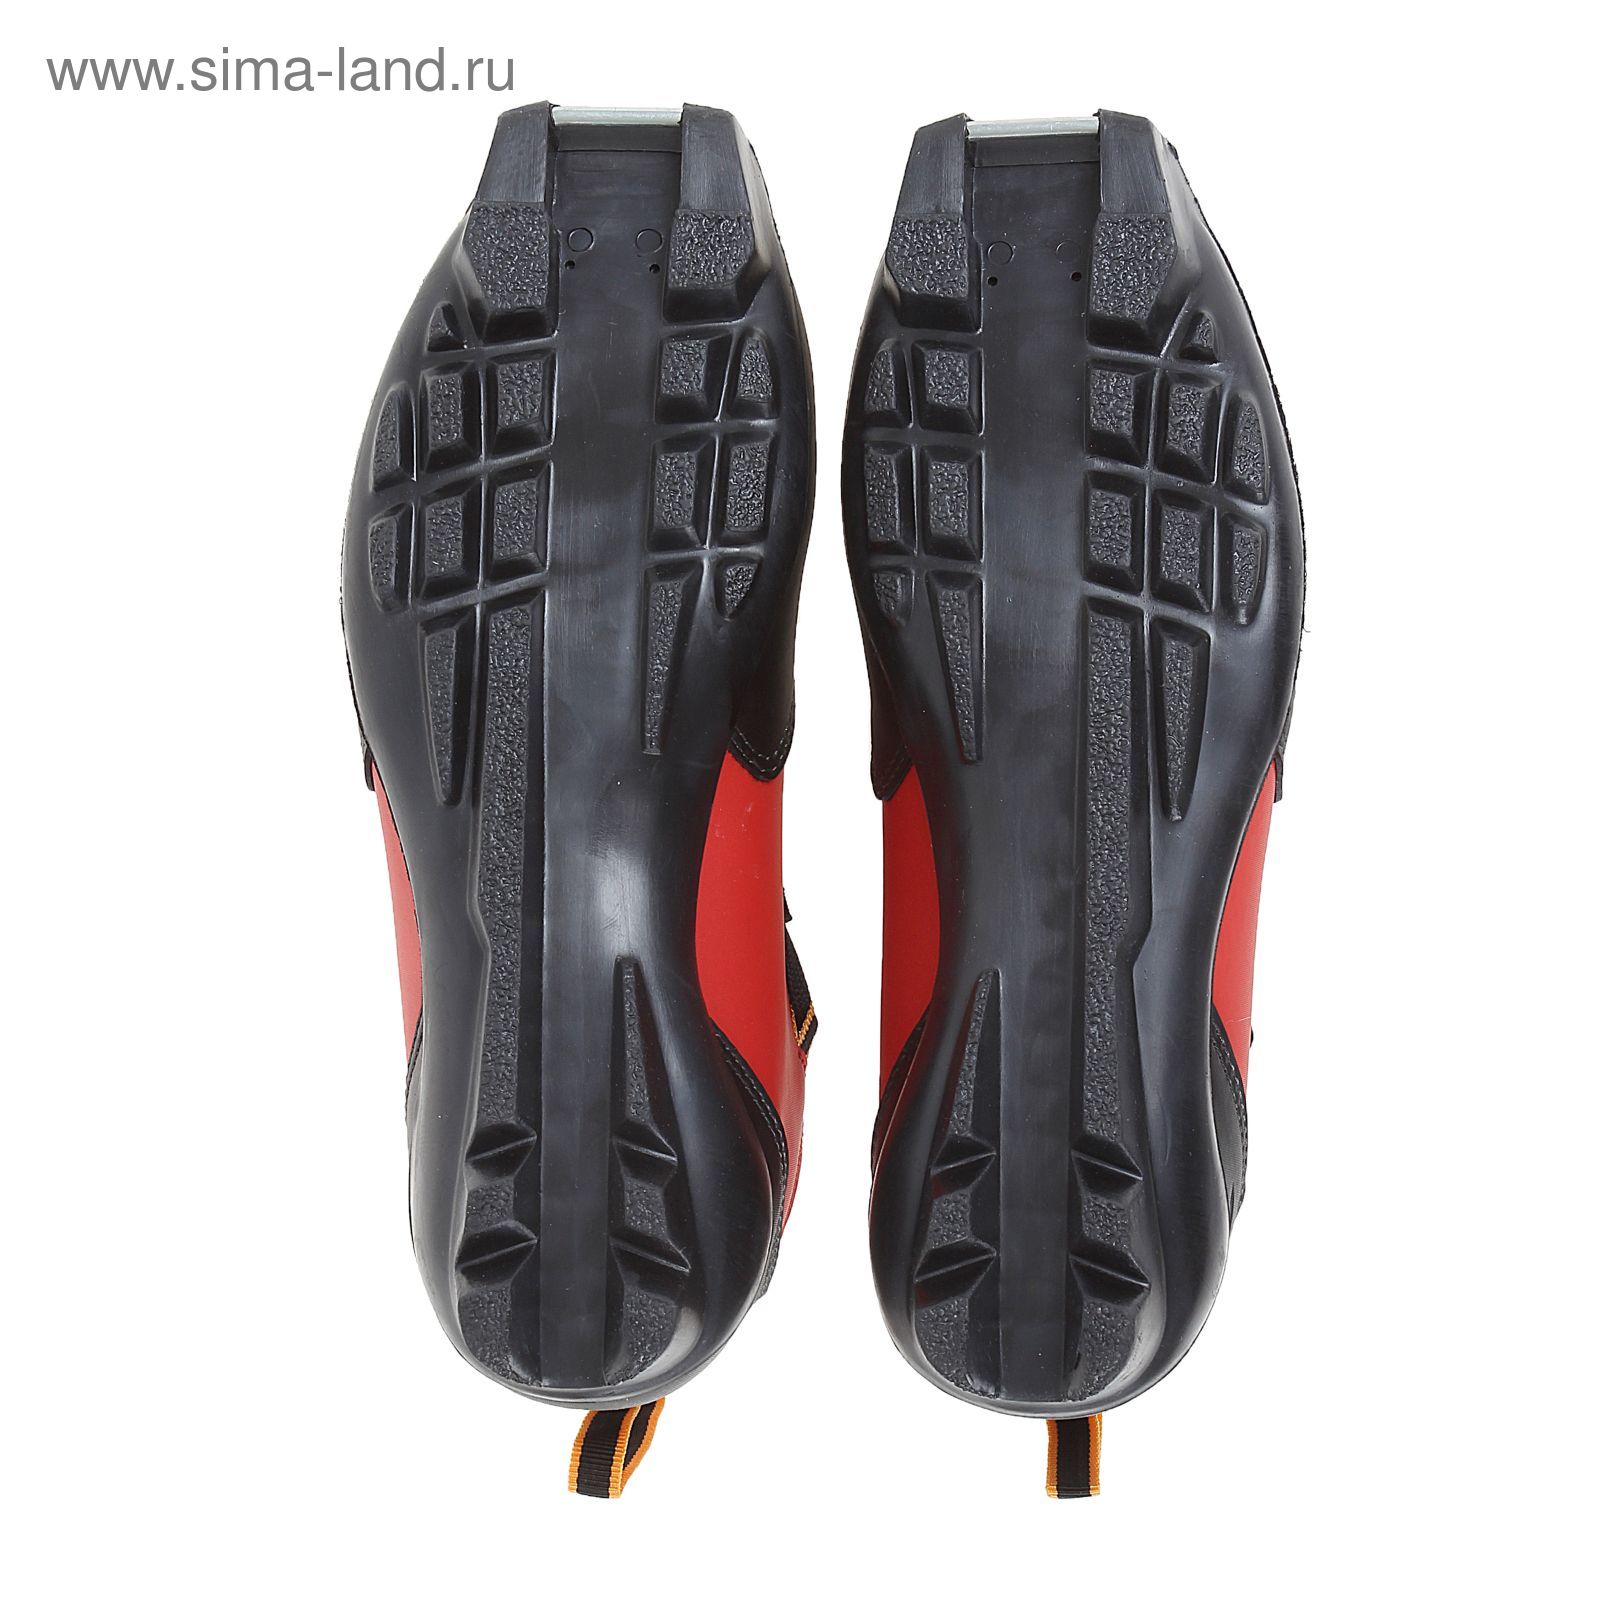 Ботинки лыжные TREK Quest SNS ИК, (черный, лого красный) (р.41)